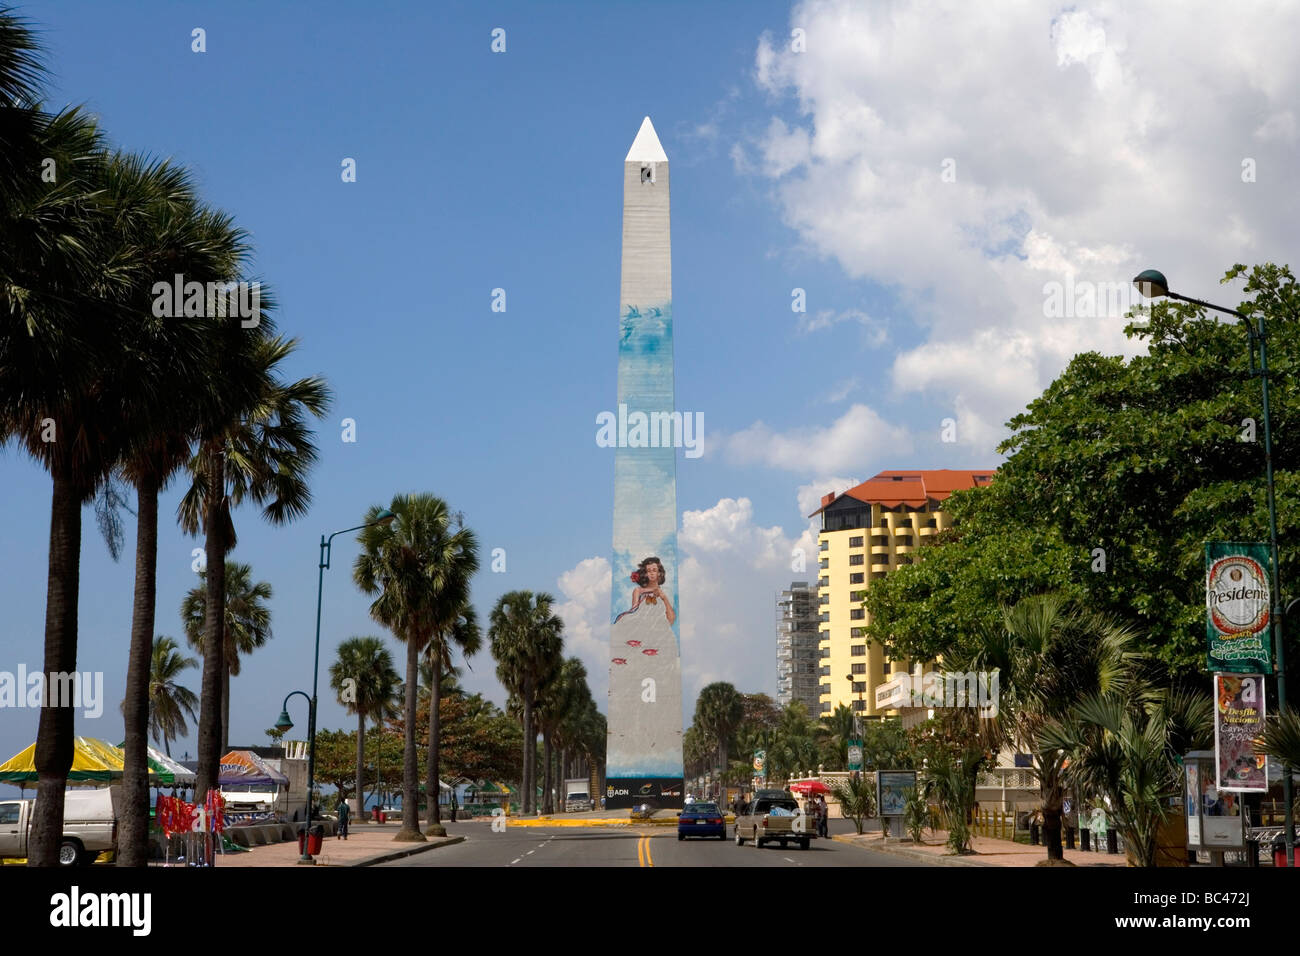 Dominican Republic - Santo Domingo - The malecon - Obelisk Stock Photo